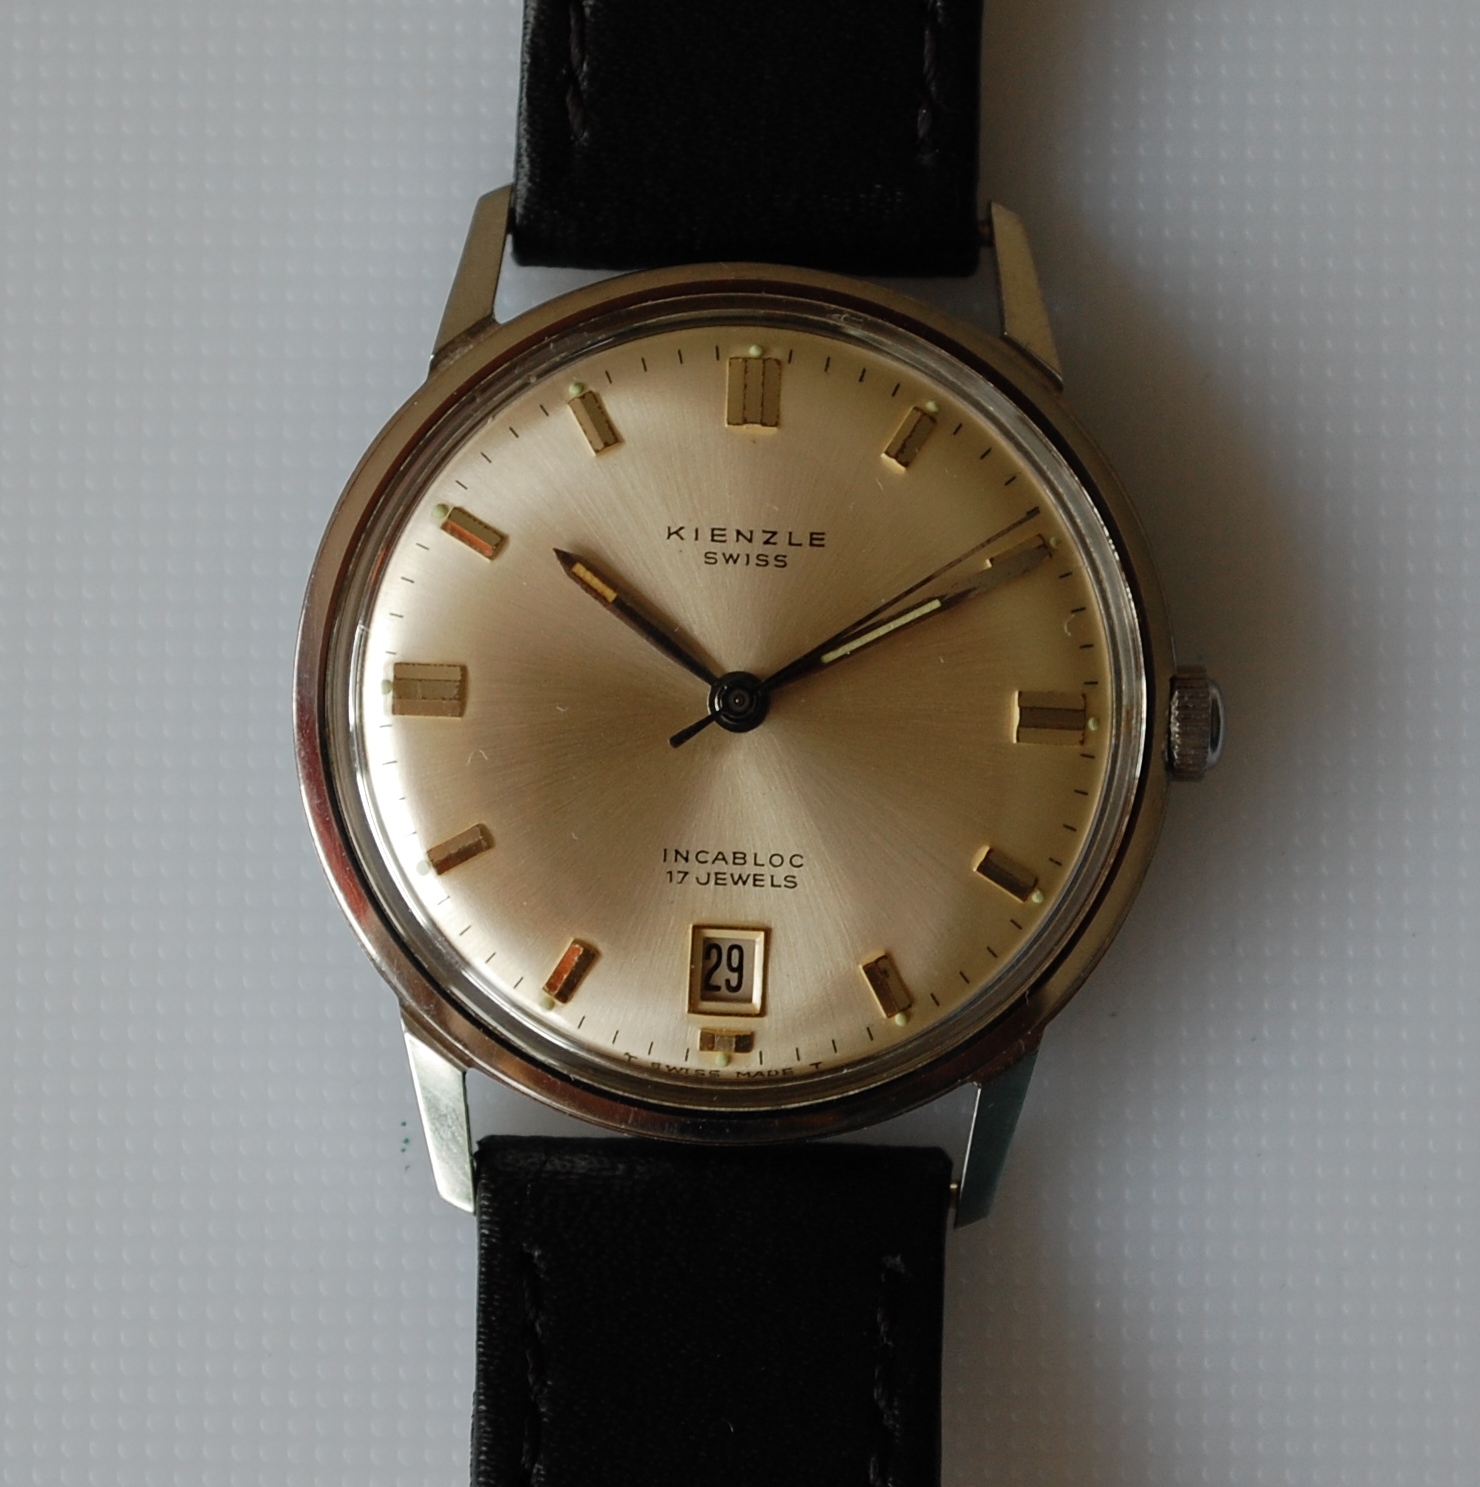 SOLD 1969 Kienzle Swiss Calendar watch - Birth Year Watches